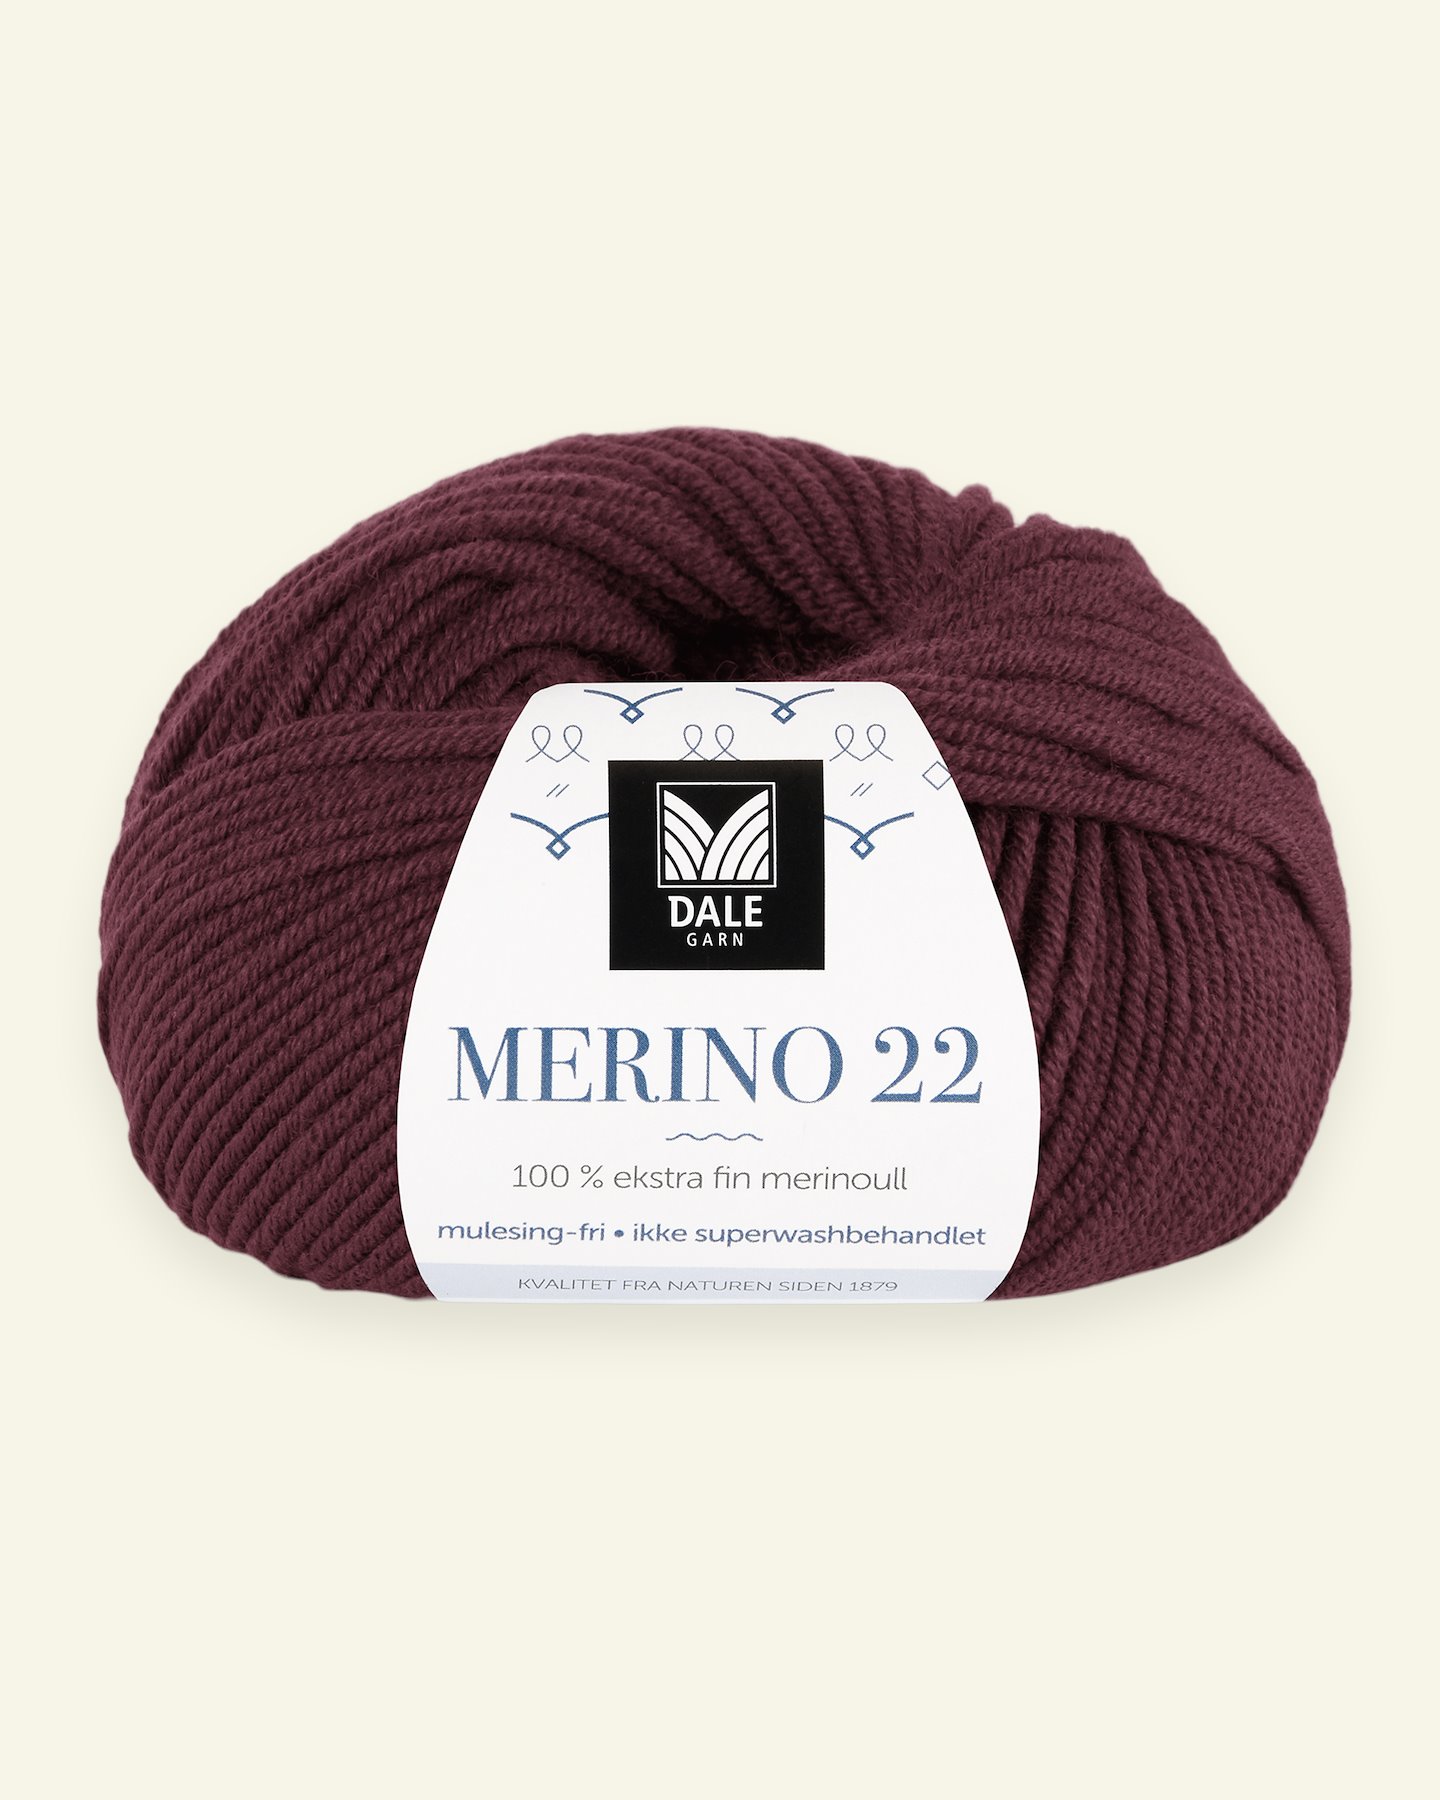 Dale Garn, 100% extra fine merino wool yarn, "Merino 22", bordeaux 90000379_pack